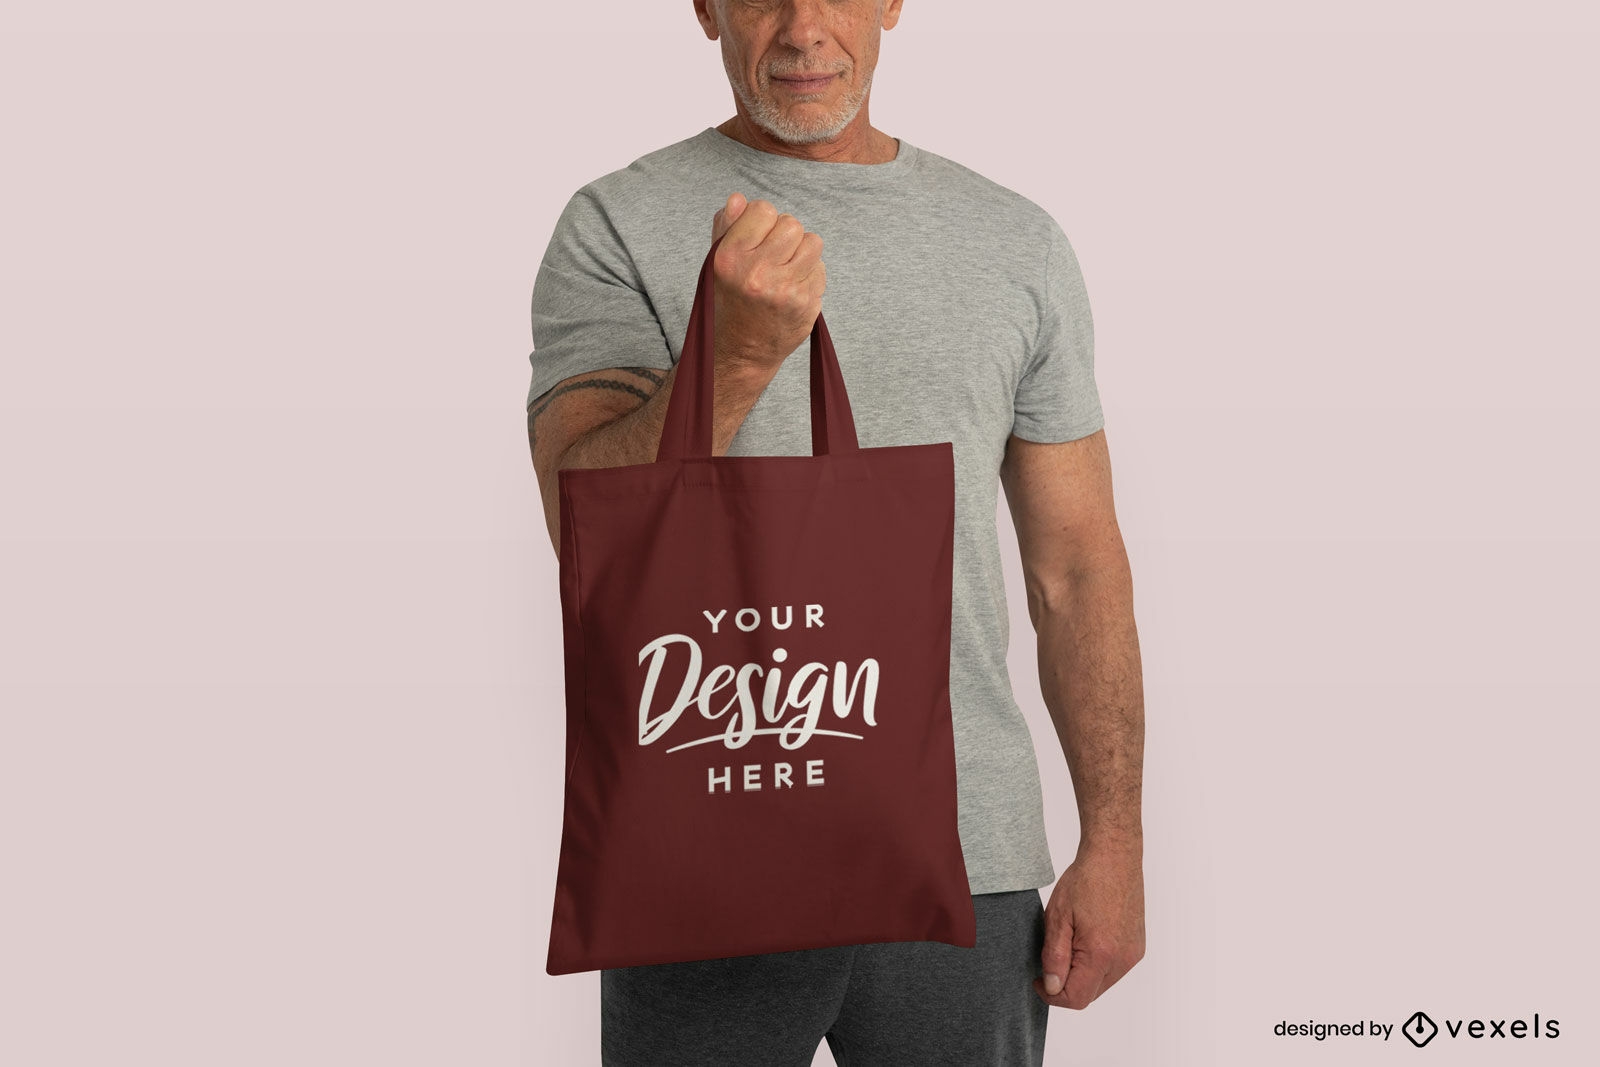 Older man model holding tote bag mockup